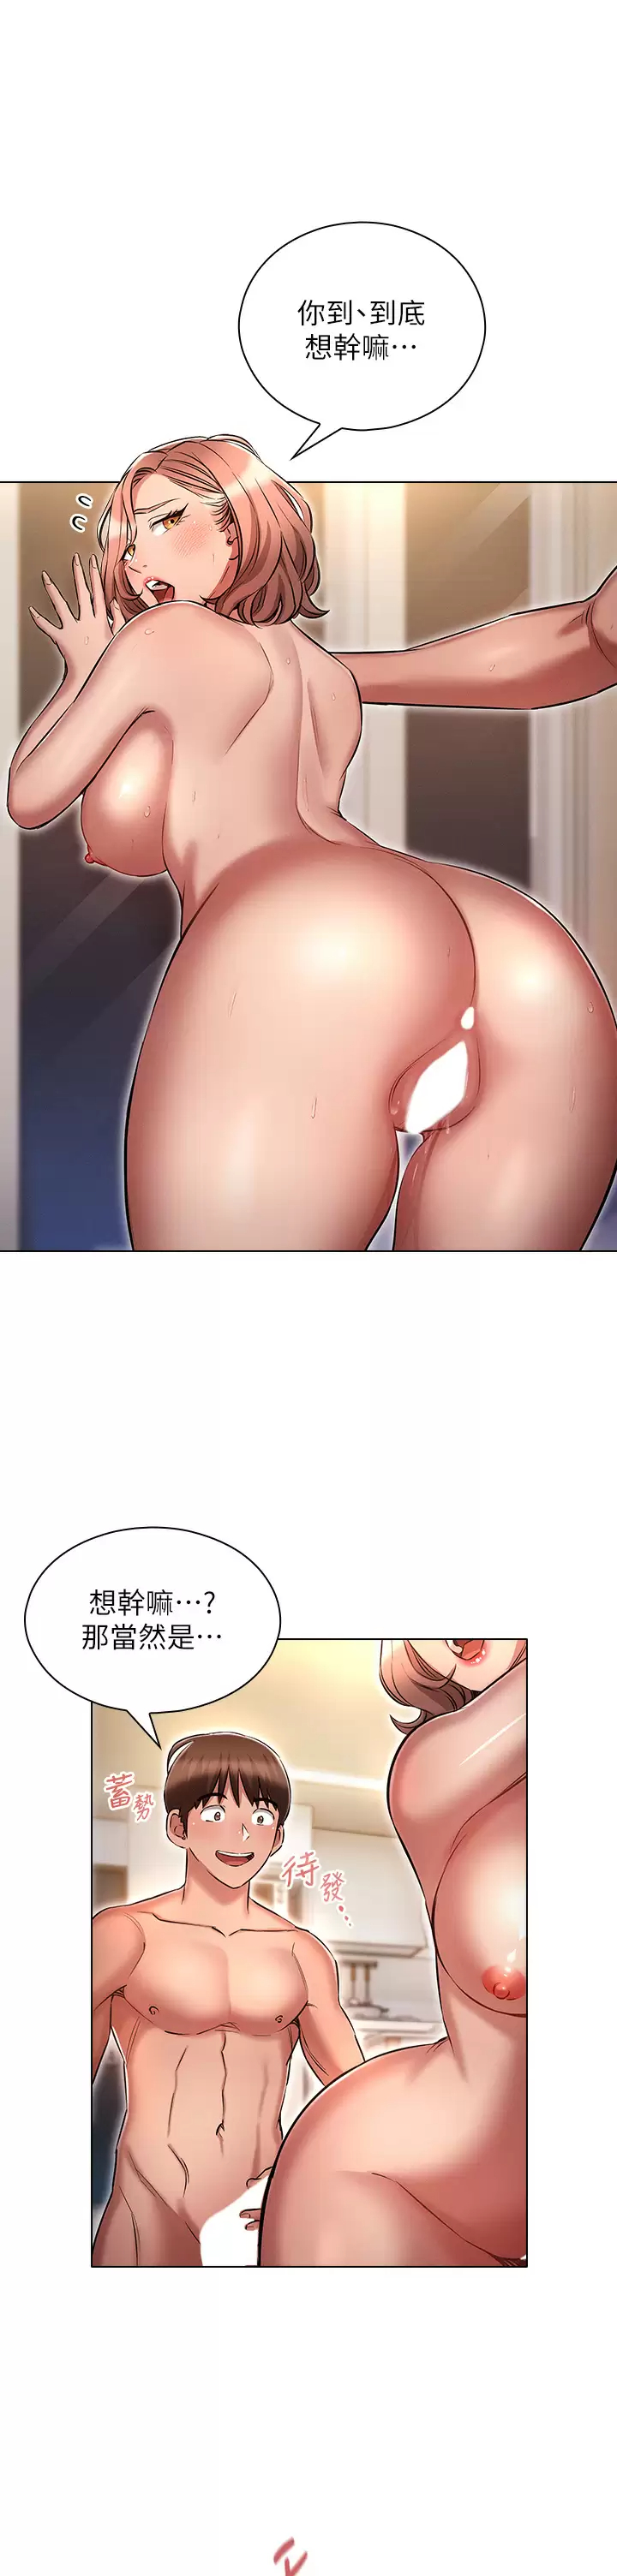 韩国污漫画 魯蛇的多重宇宙 第14话 挑战窗边暴露性爱! 30